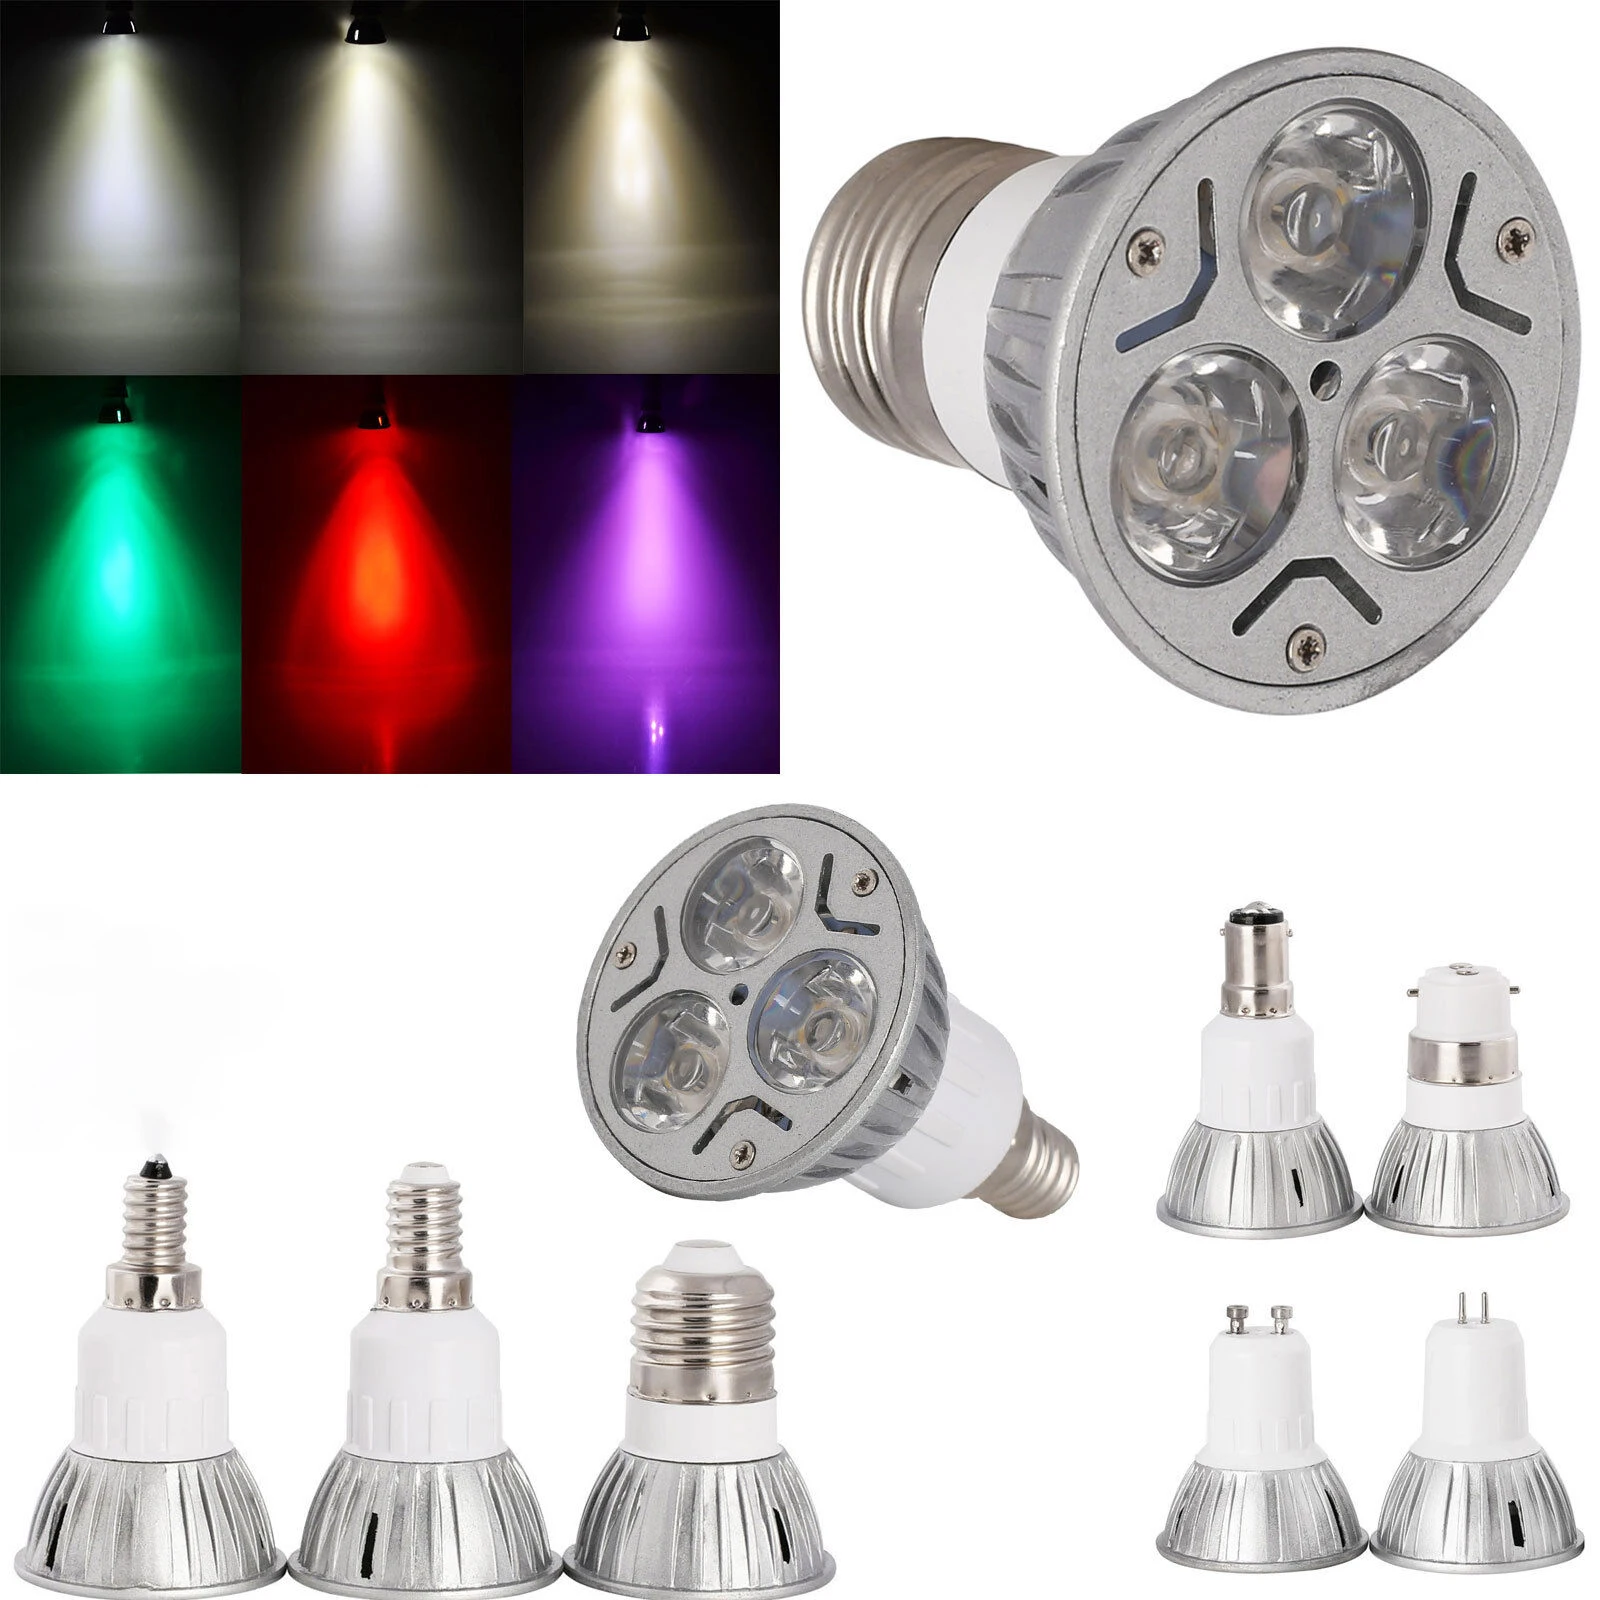 

GU10 MR16 E27 3W LED Energy-Saving Spotlight Downlight Household Light Bulb 85-265V White/Warm White/Red/Blue/Yellow Bulbs Lamps